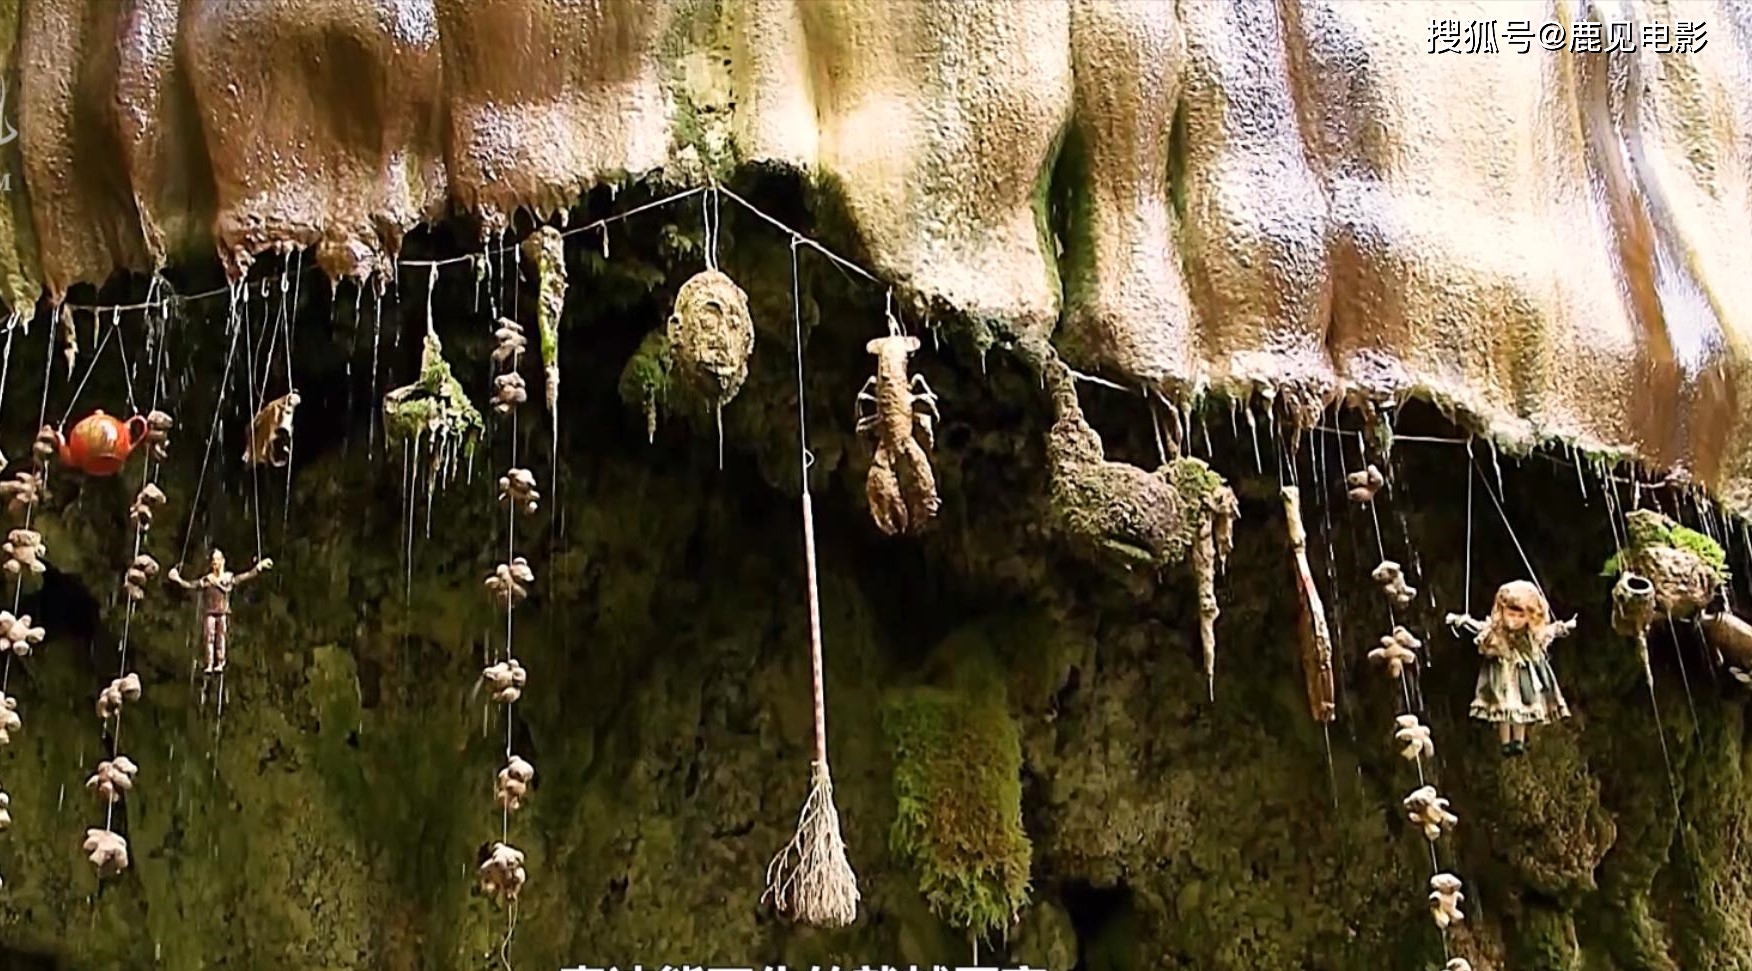 英格兰的魔方洞穴里，是什么让毛绒玩具泰迪熊变成了化石呢？